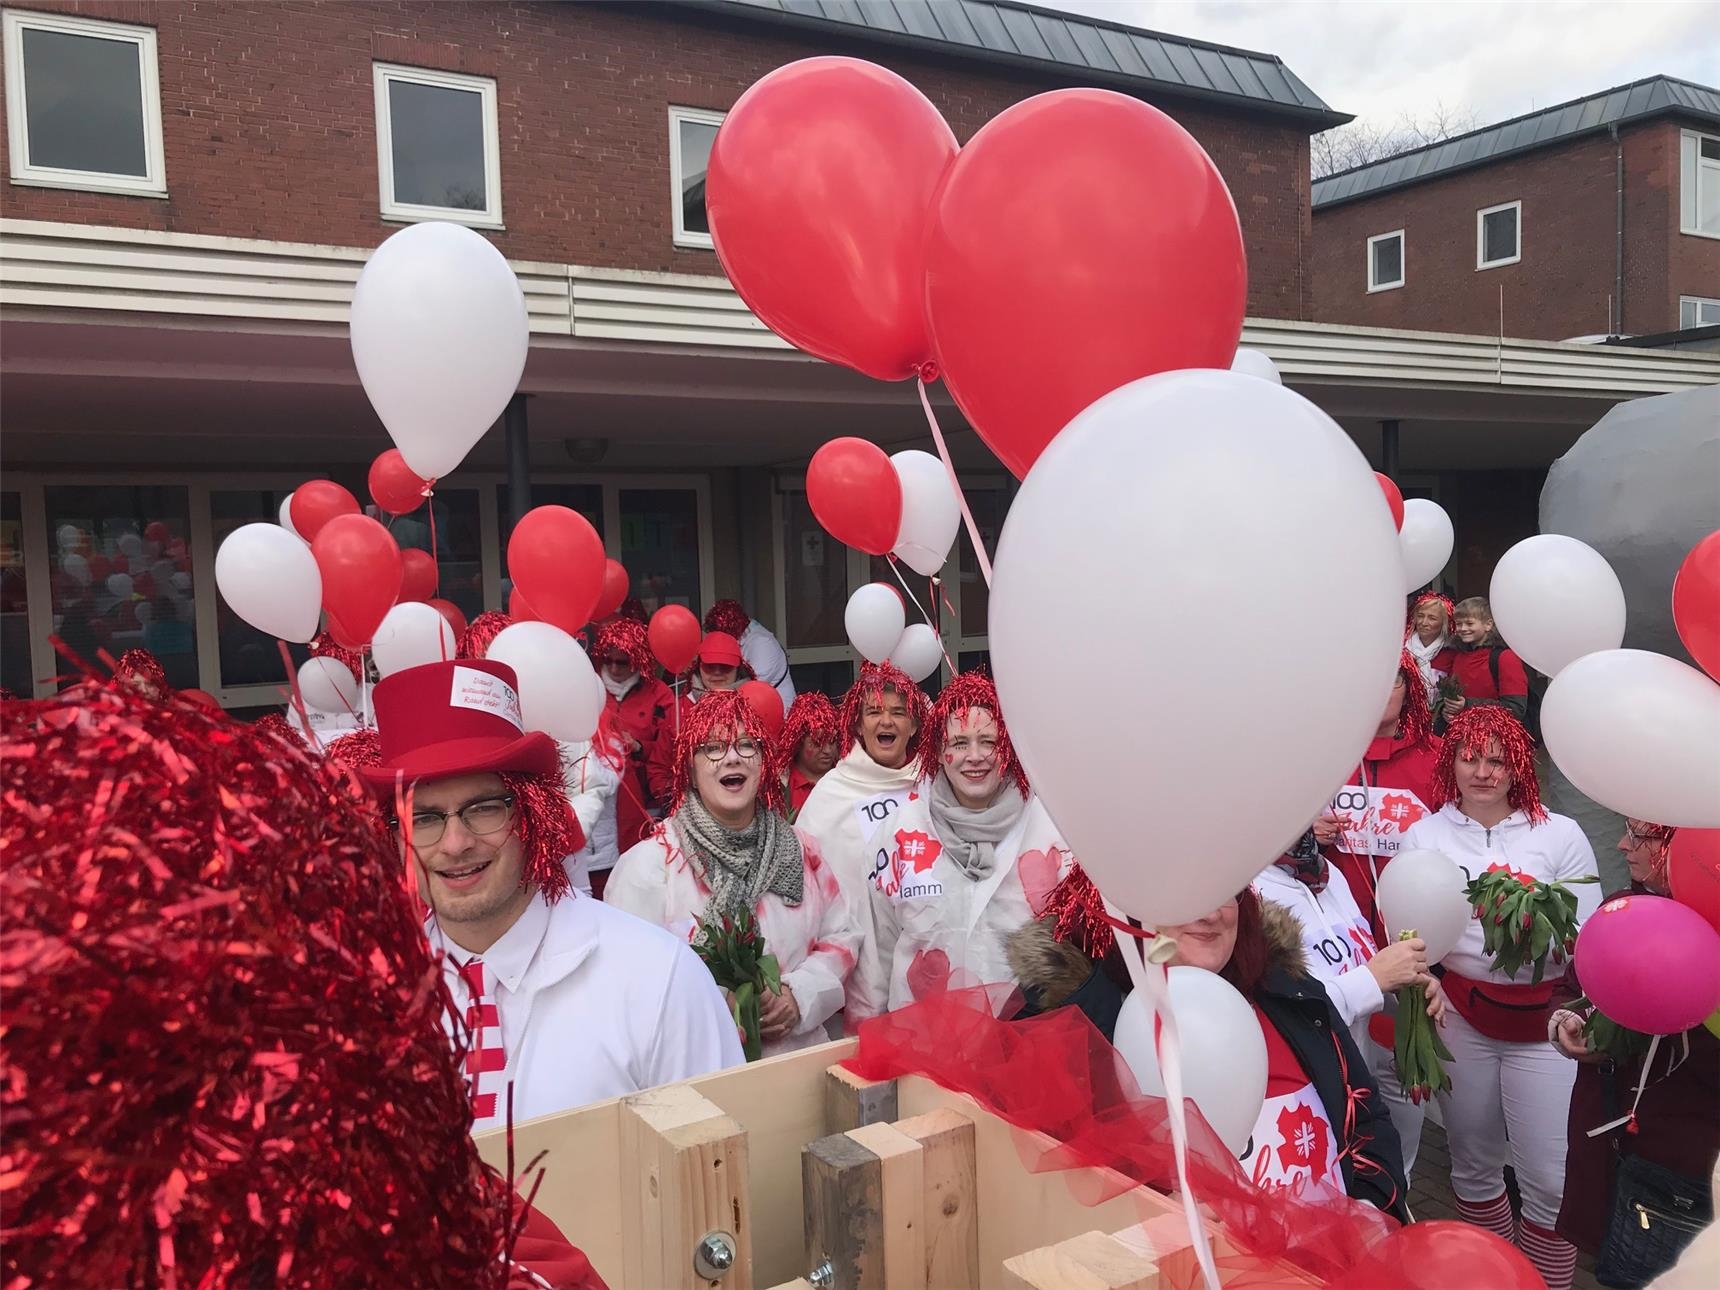 Rot-weiß gekleidete Frauen mit roten Perücken, Luftballons und Tulpen (Caritas Hamm)